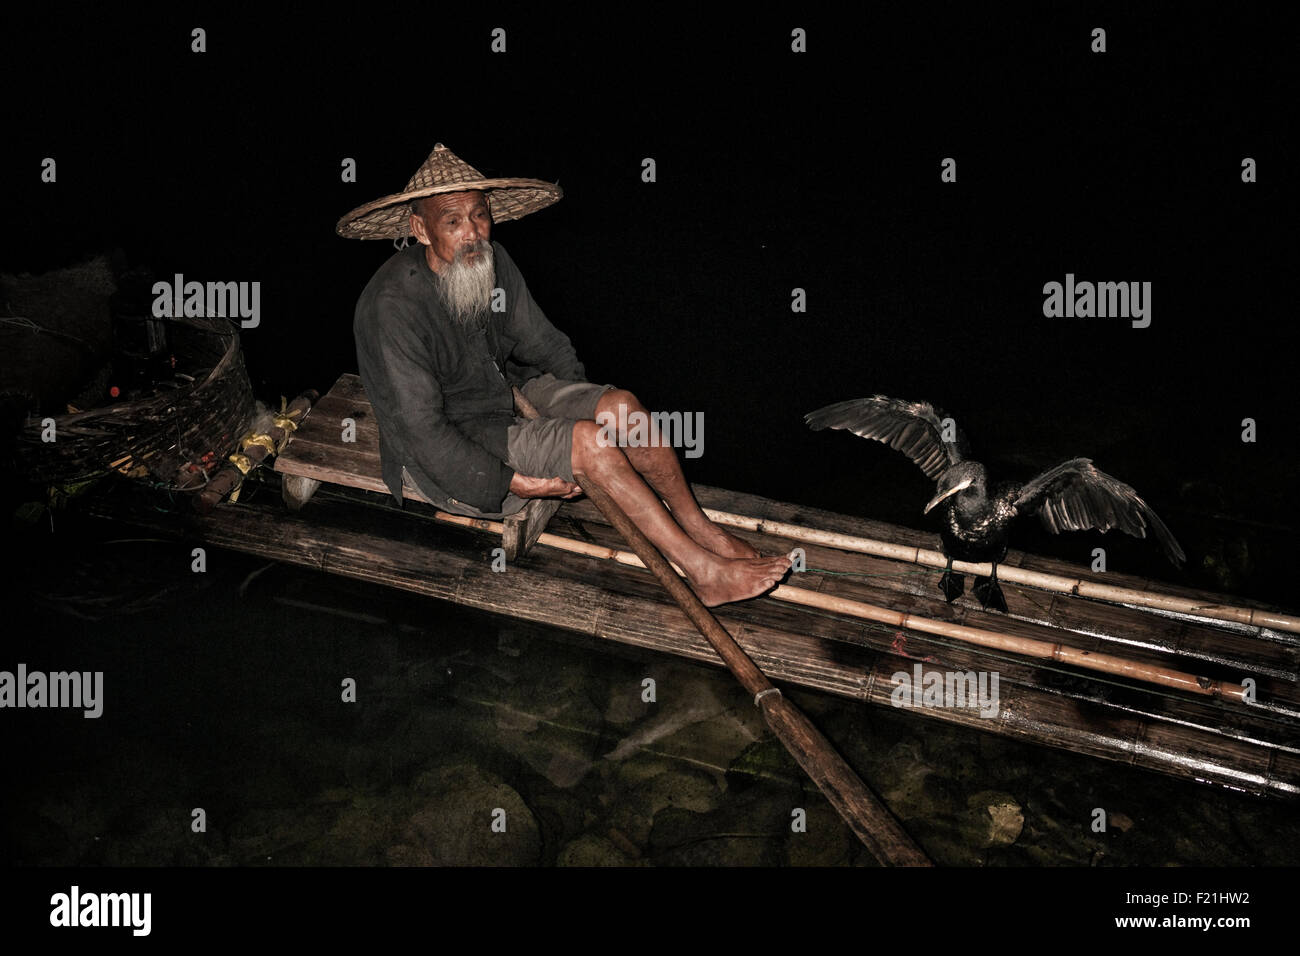 Cormorano uccello si stende le sue ali accanto a un pescatore seduto su di una zattera di bamboo di notte sul fiume Li, Cina e Asia Foto Stock